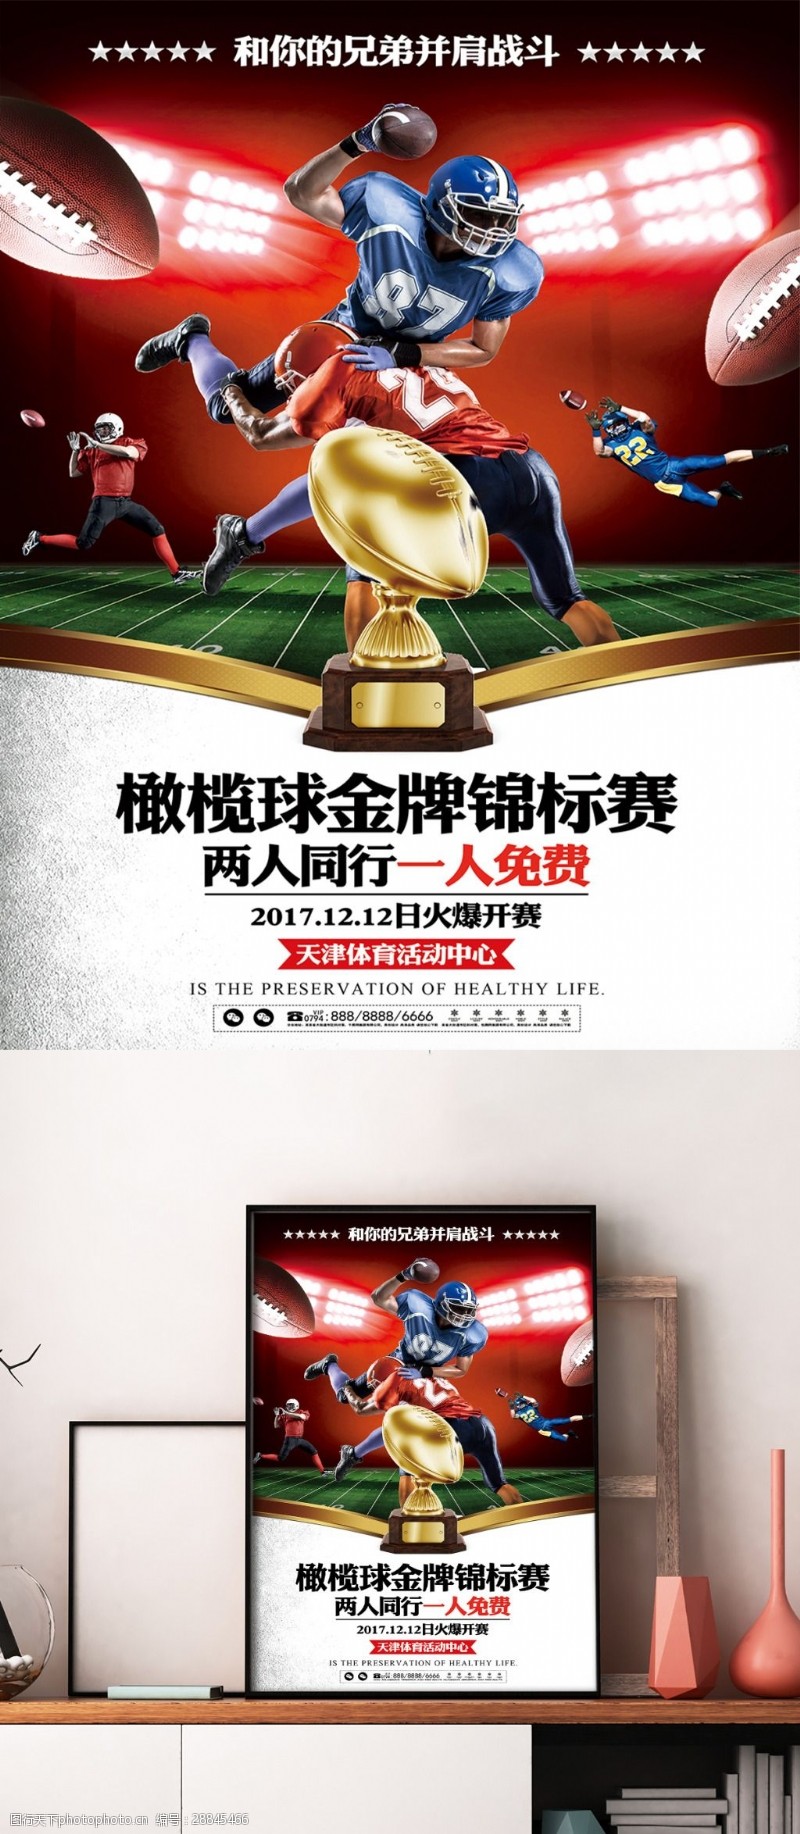 橄榄球锦标赛体育竞技宣传海报